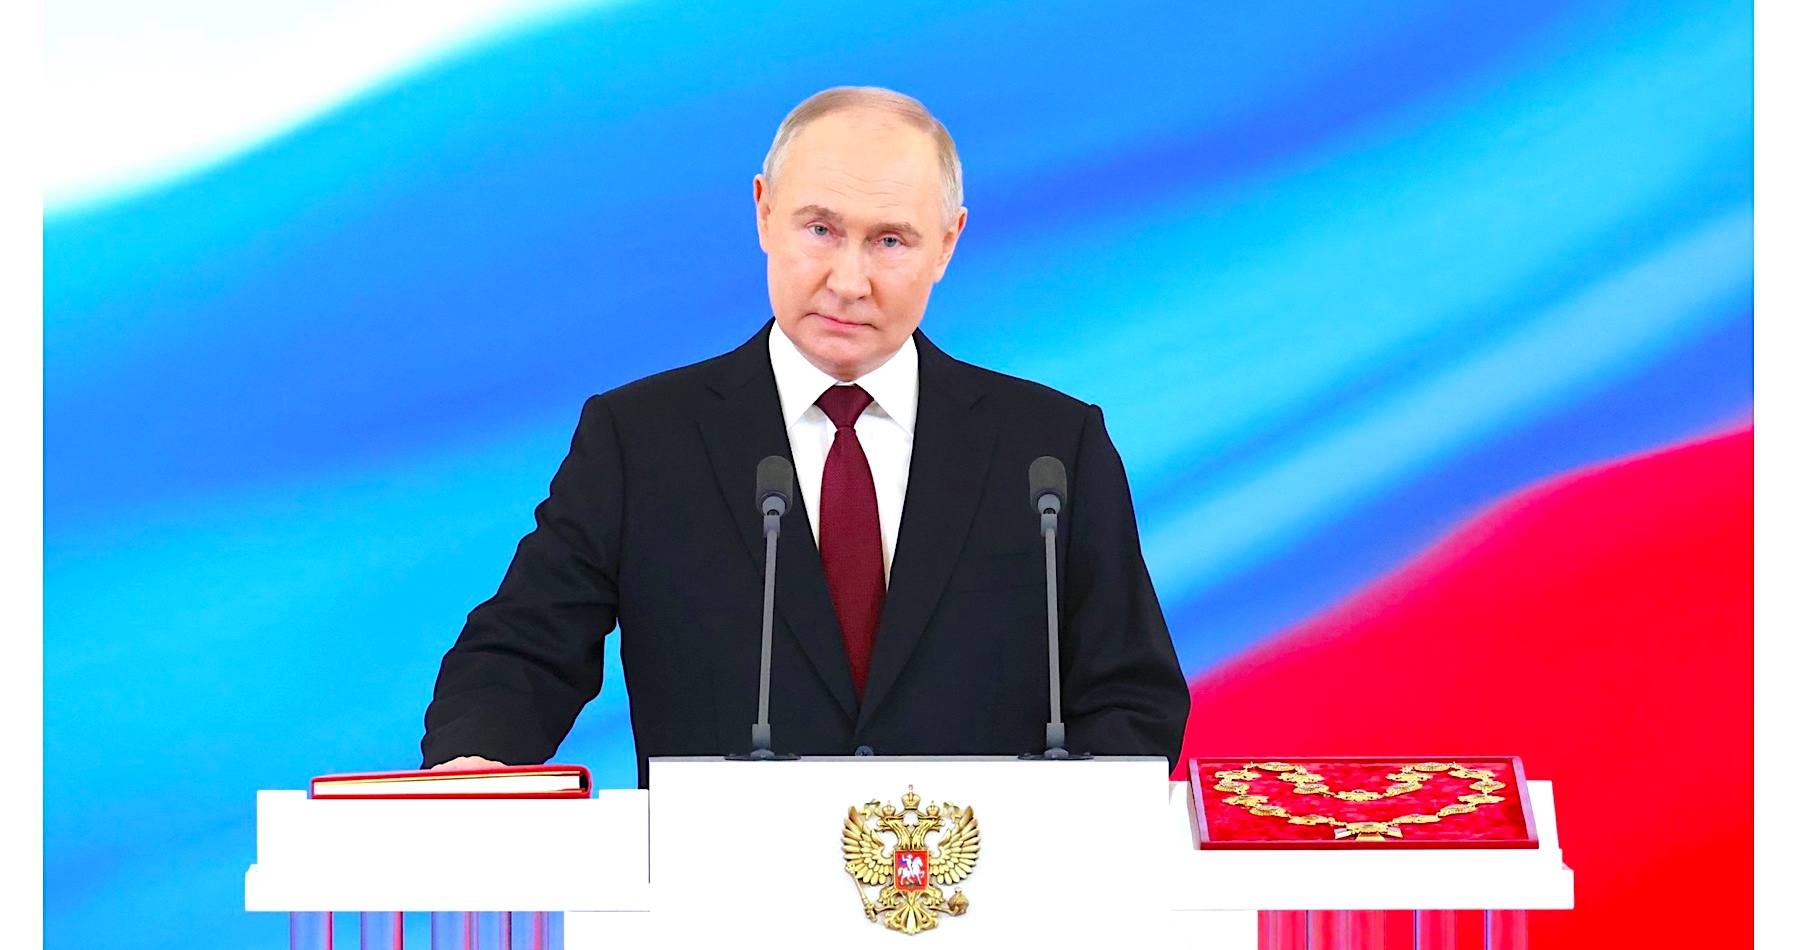 VIDEO: Putin sa ujal svojho piateho funkčného obdobia na čele Ruskej federácie. „Spolu s našimi partnermi v eurázijskej integrácii a ďalšími suverénnymi centrami rozvoja budeme naďalej pracovať na vytváraní multipolárneho svetového poriadku. Spoločne zvíťazíme!,“ povedal šéf Kremľa pri skladaní prezidentského sľubu, v ktorom vyhlásil, že jeho krajina je otvorená dialógu so Západom, ak sa ten namiesto agresie namierenej voči Rusku  bude usilovať o mier a spoluprácu